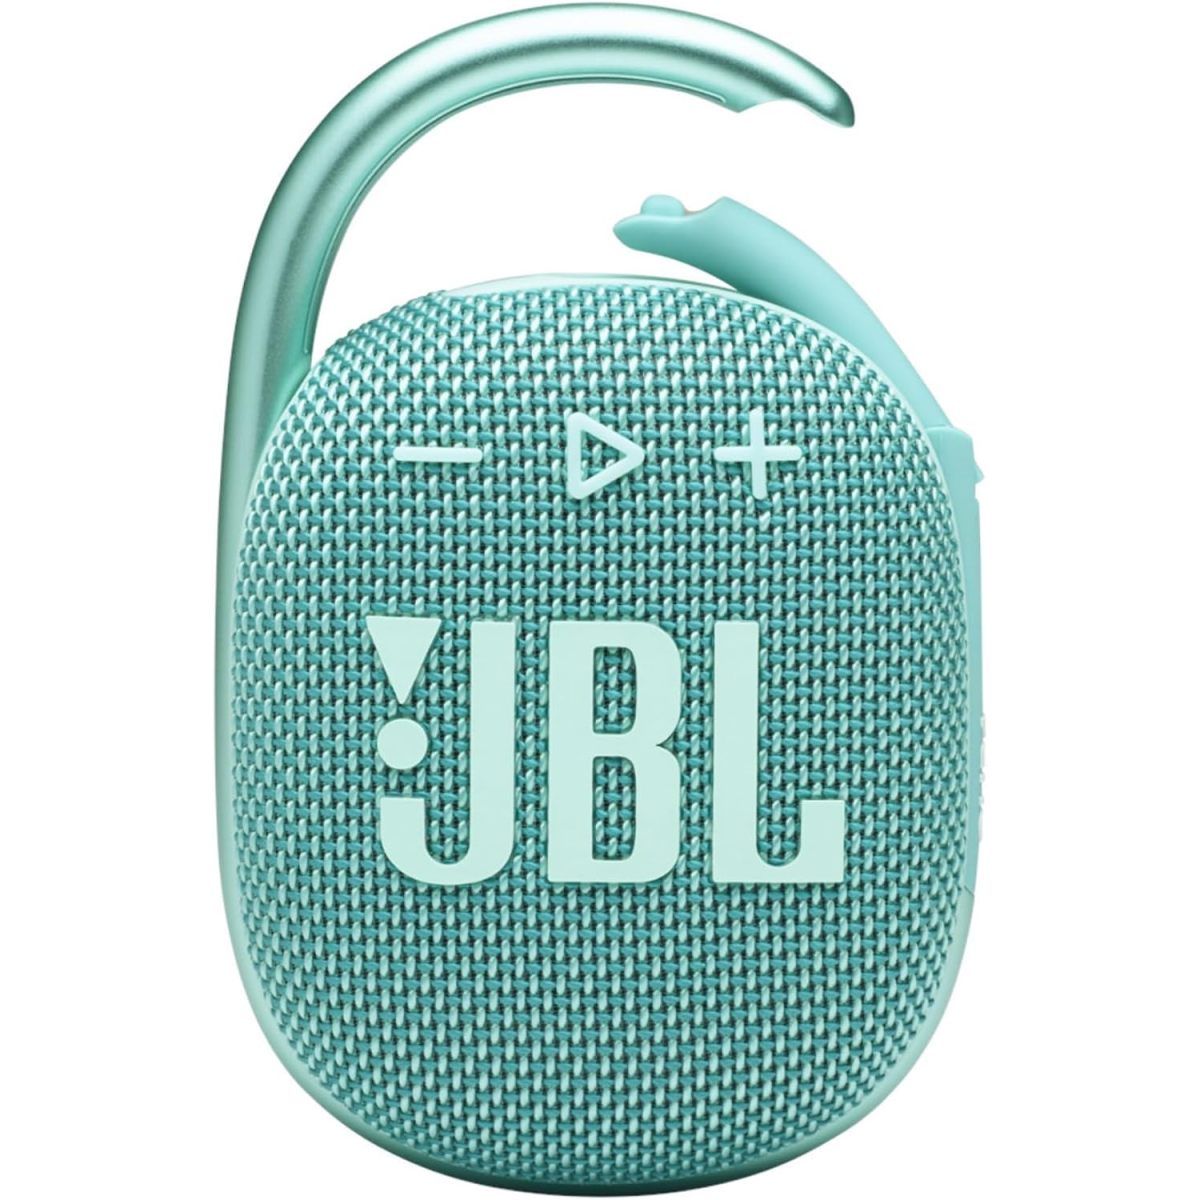 Колонка JBL clip 4. Колонка JBL 1. Колонка JBL бирюзовая. Портативная колонка JBL бирюзовый.